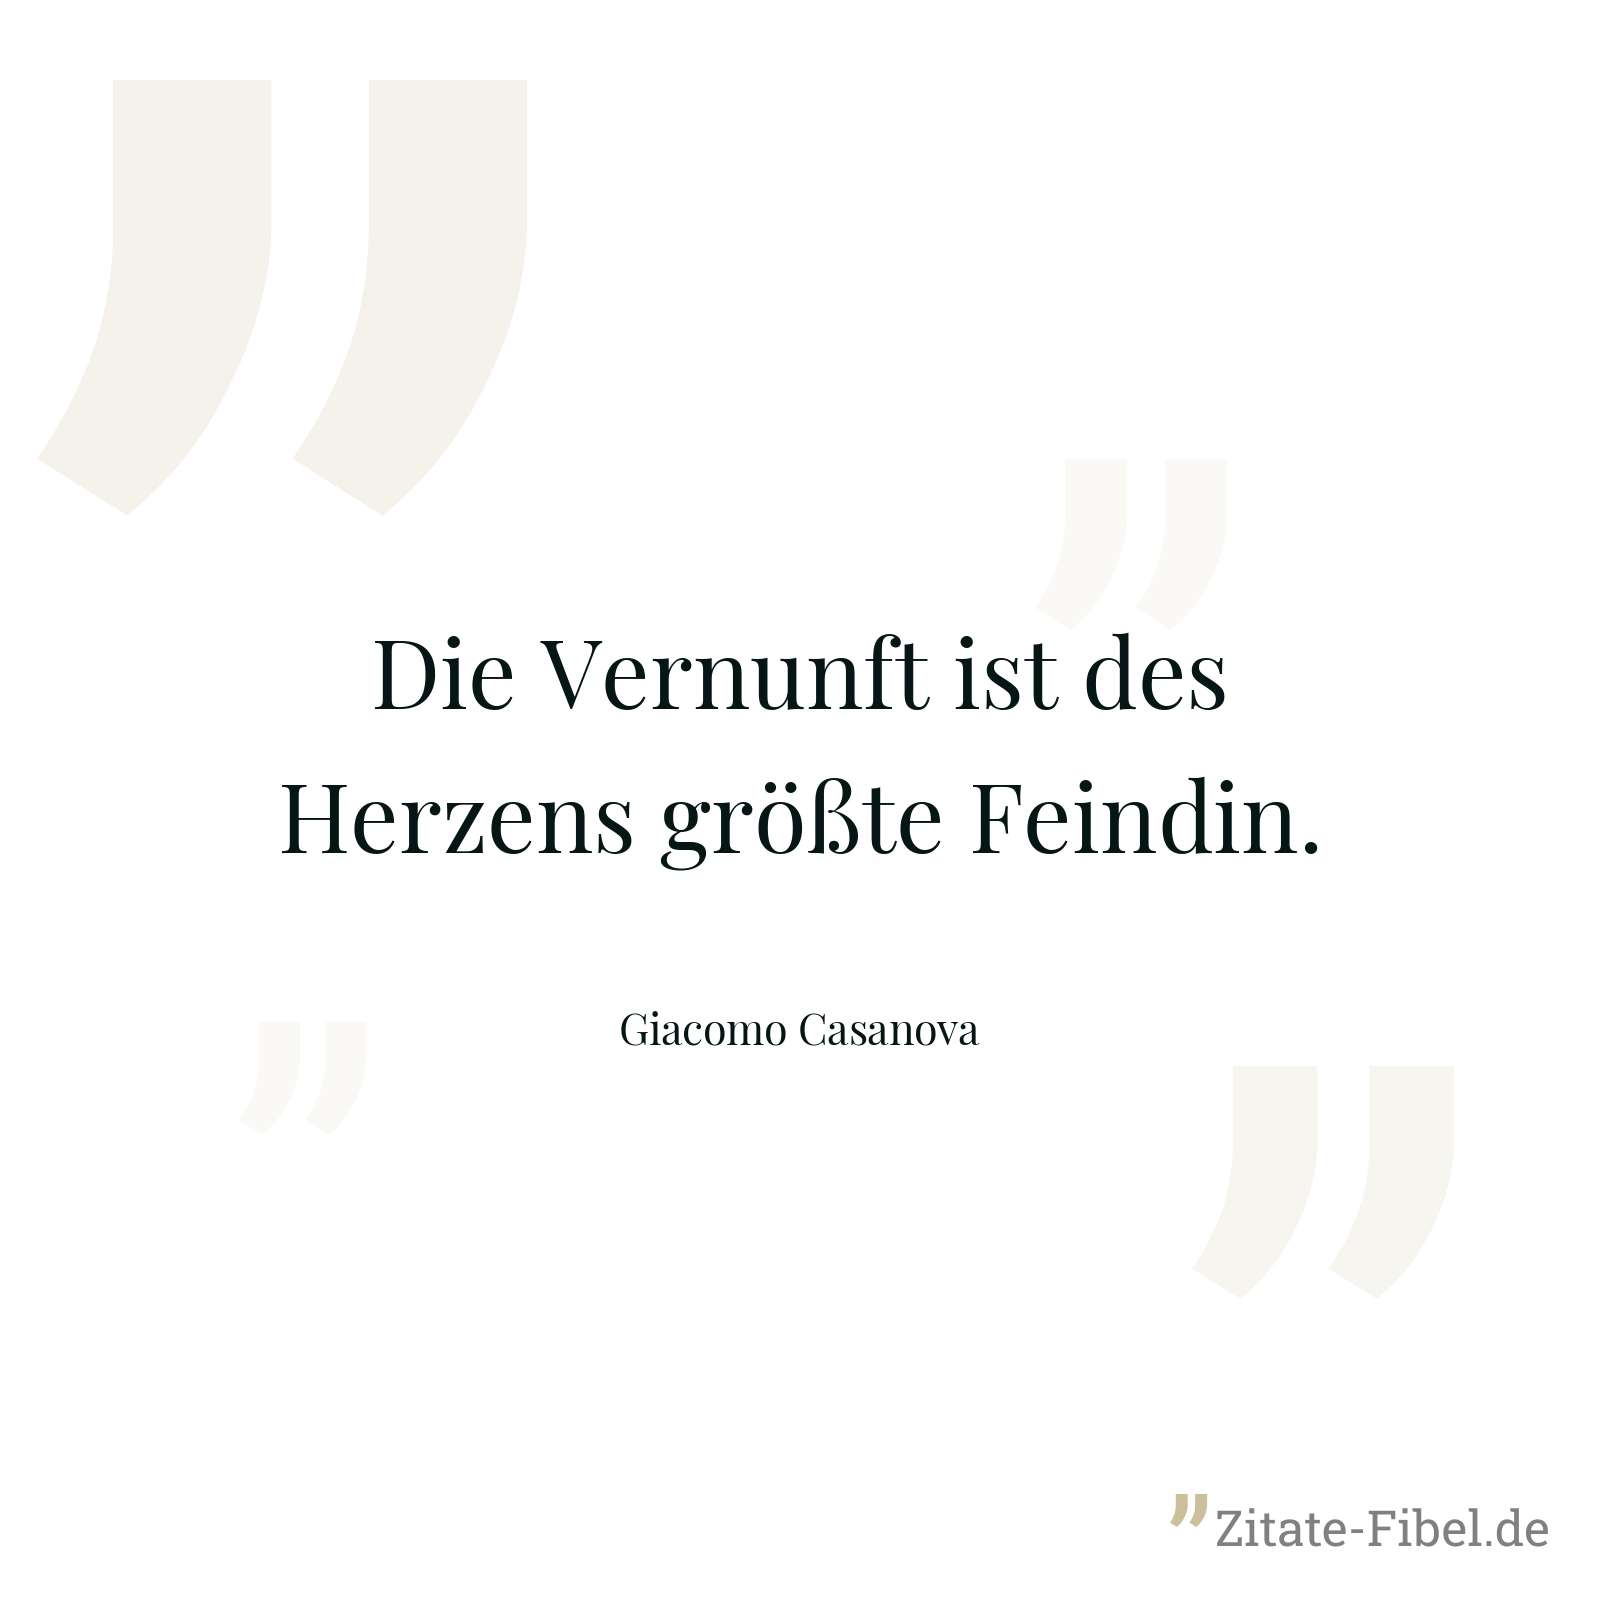 Die Vernunft ist des Herzens größte Feindin. - Giacomo Casanova